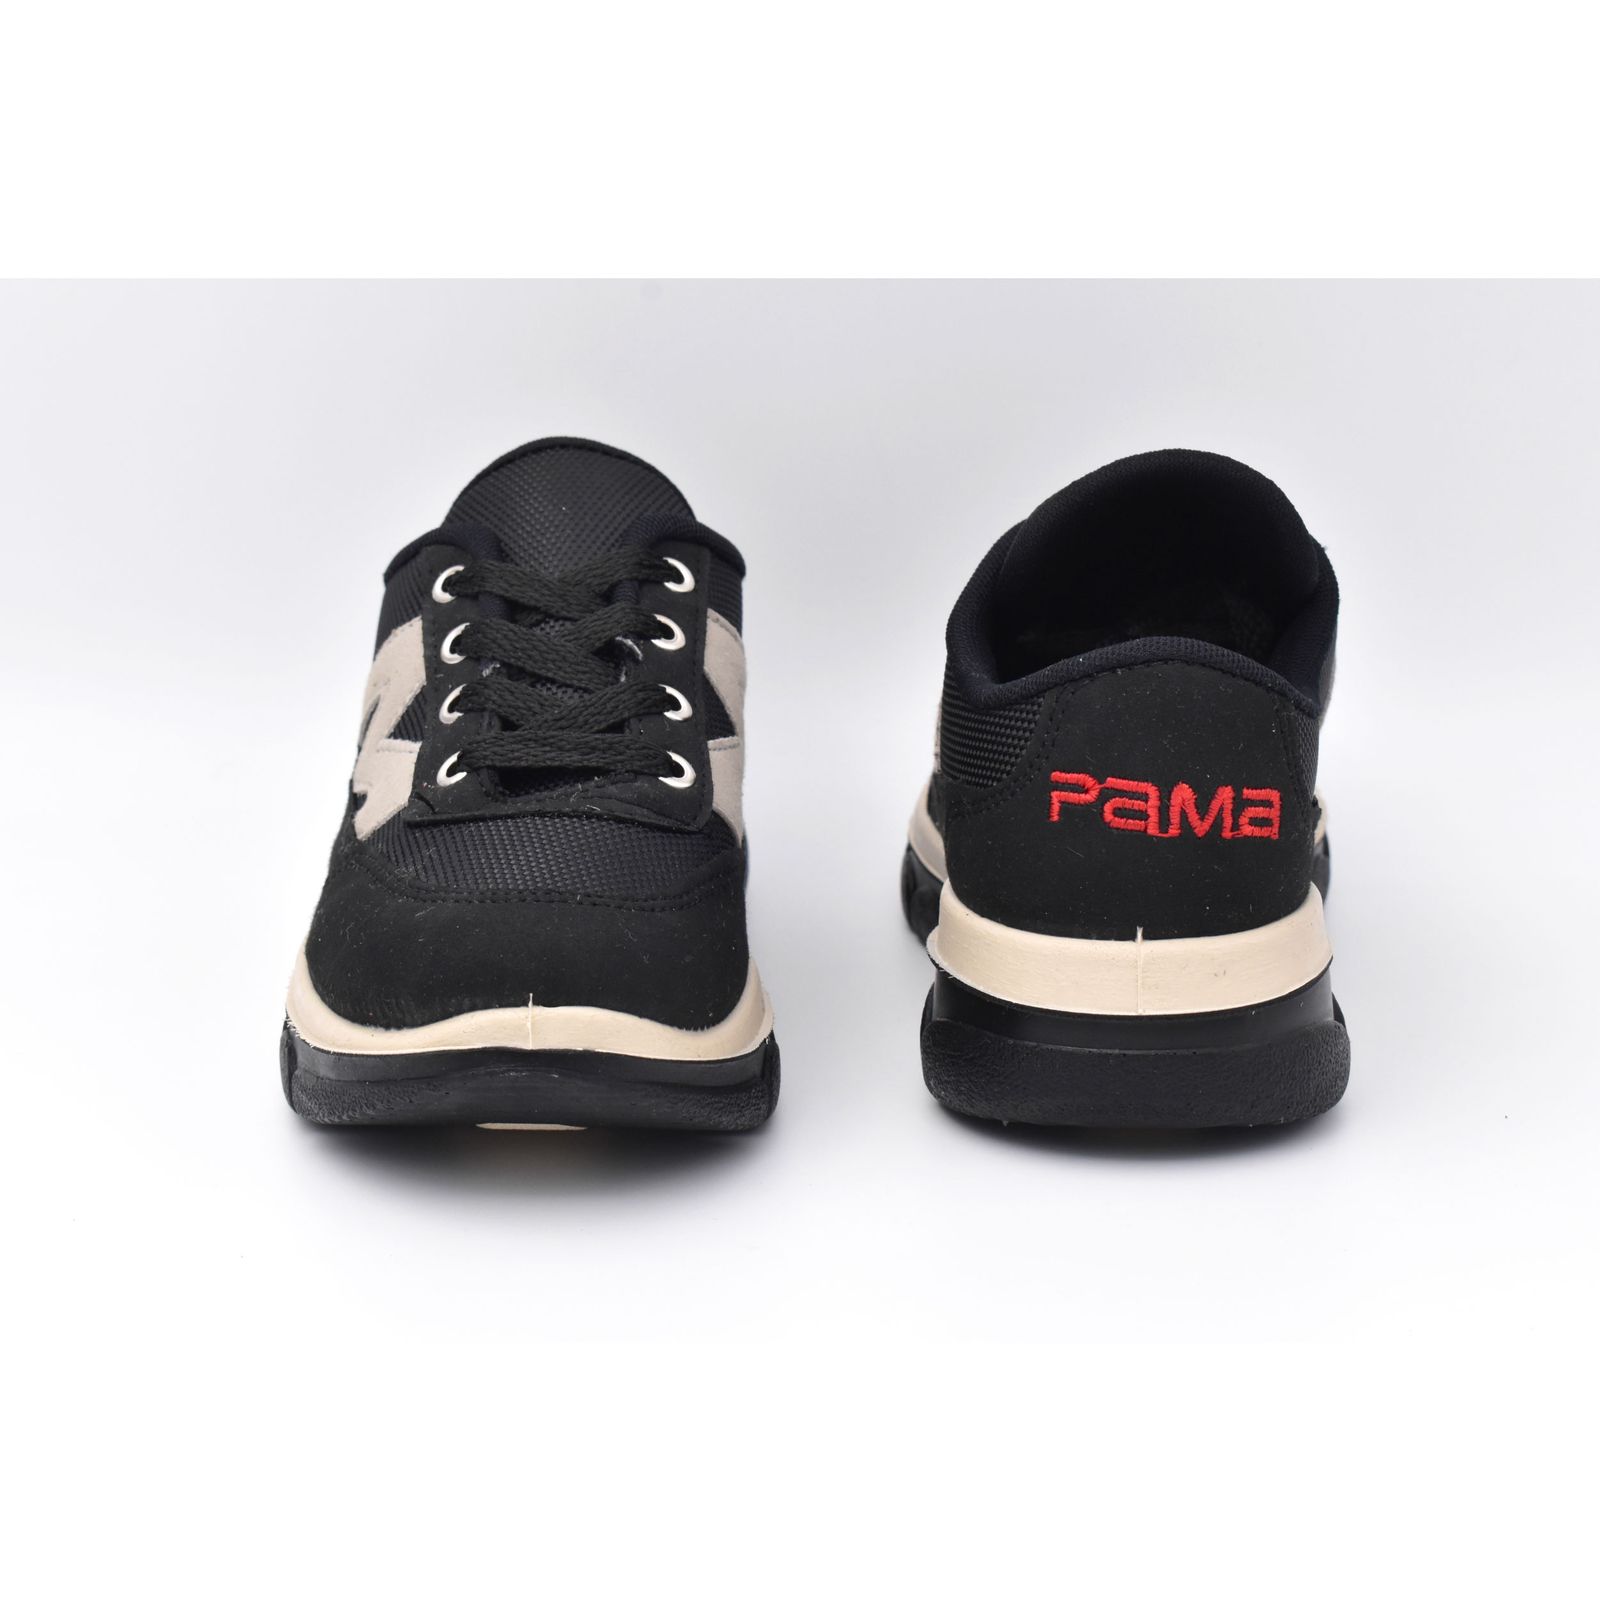 کفش پیاده روی زنانه پاما مدل پالرمو کد G1322 -  - 7